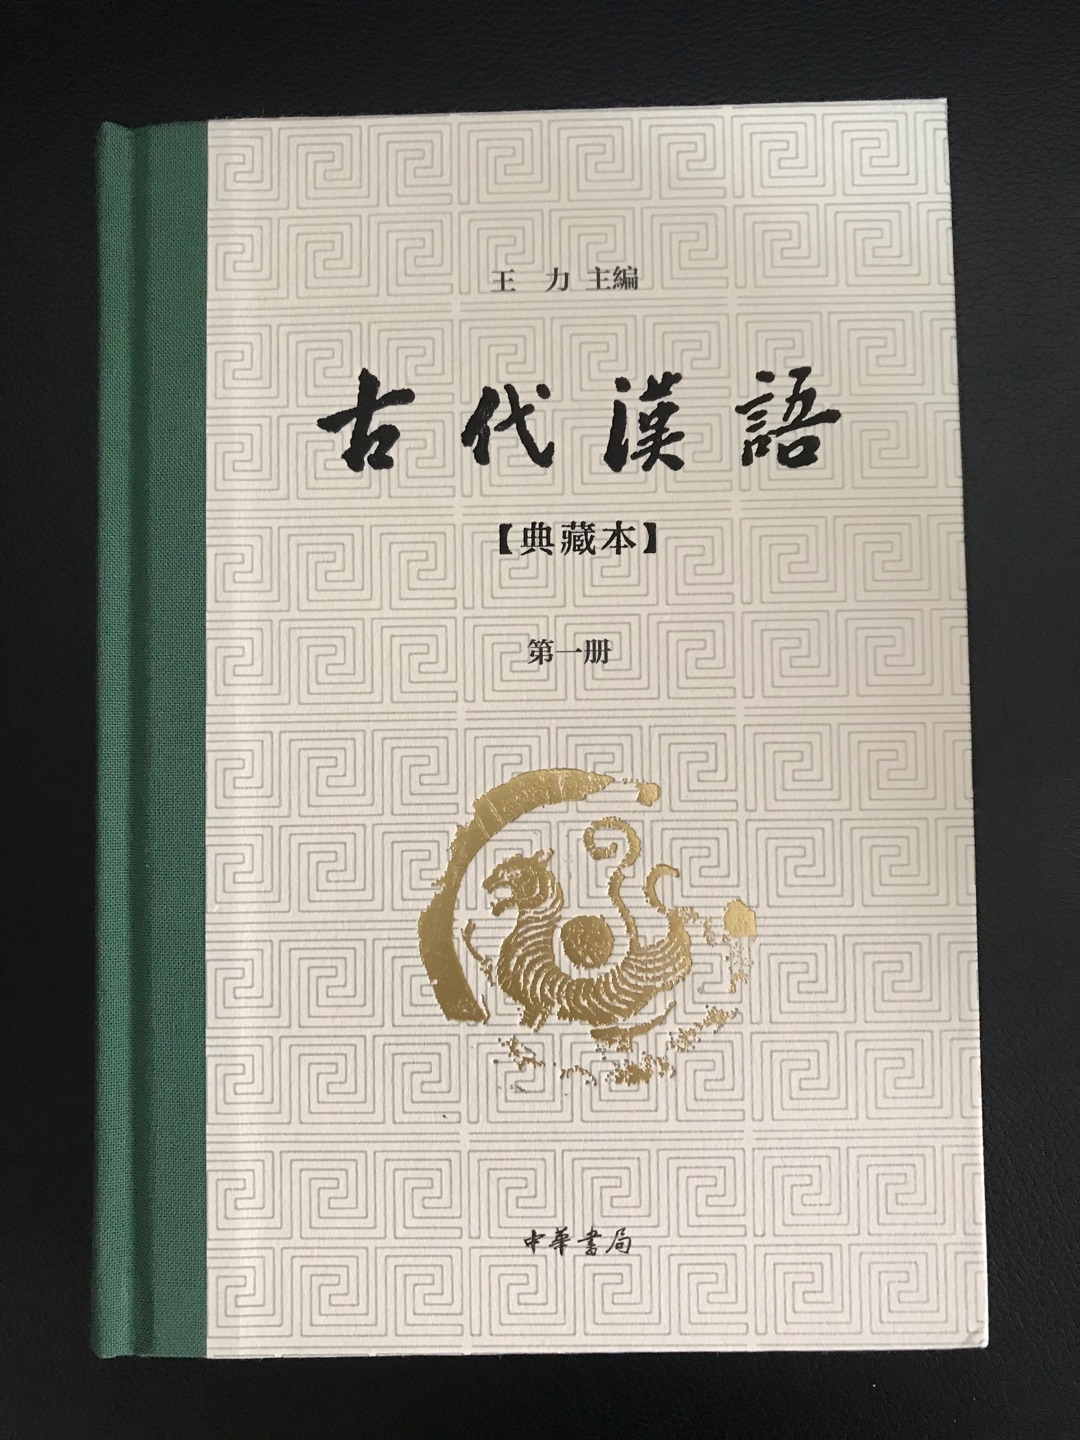 古代汉语典藏本，权**，学术性较强，装帧精美，排版清晰，中华书局值得信赖！